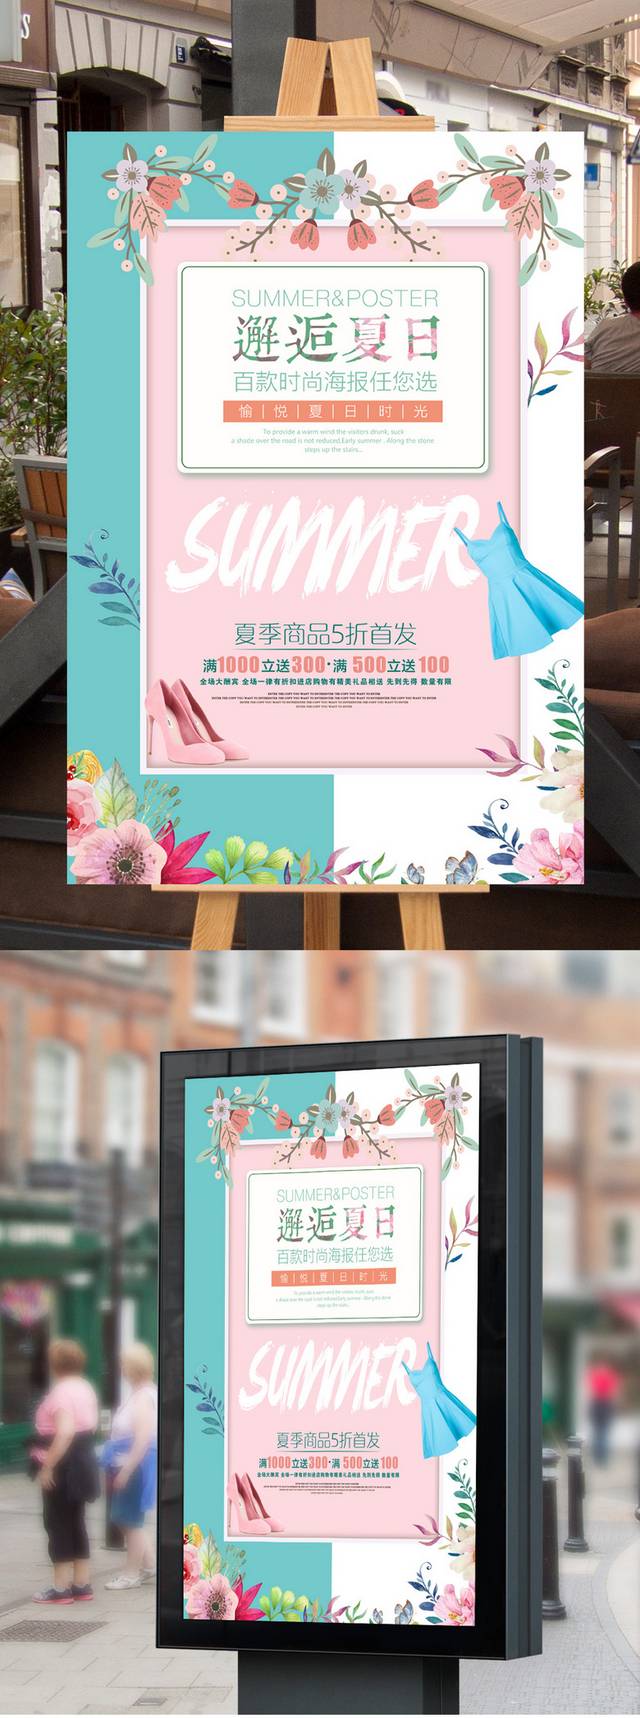 精品夏日促销海报模板设计下载